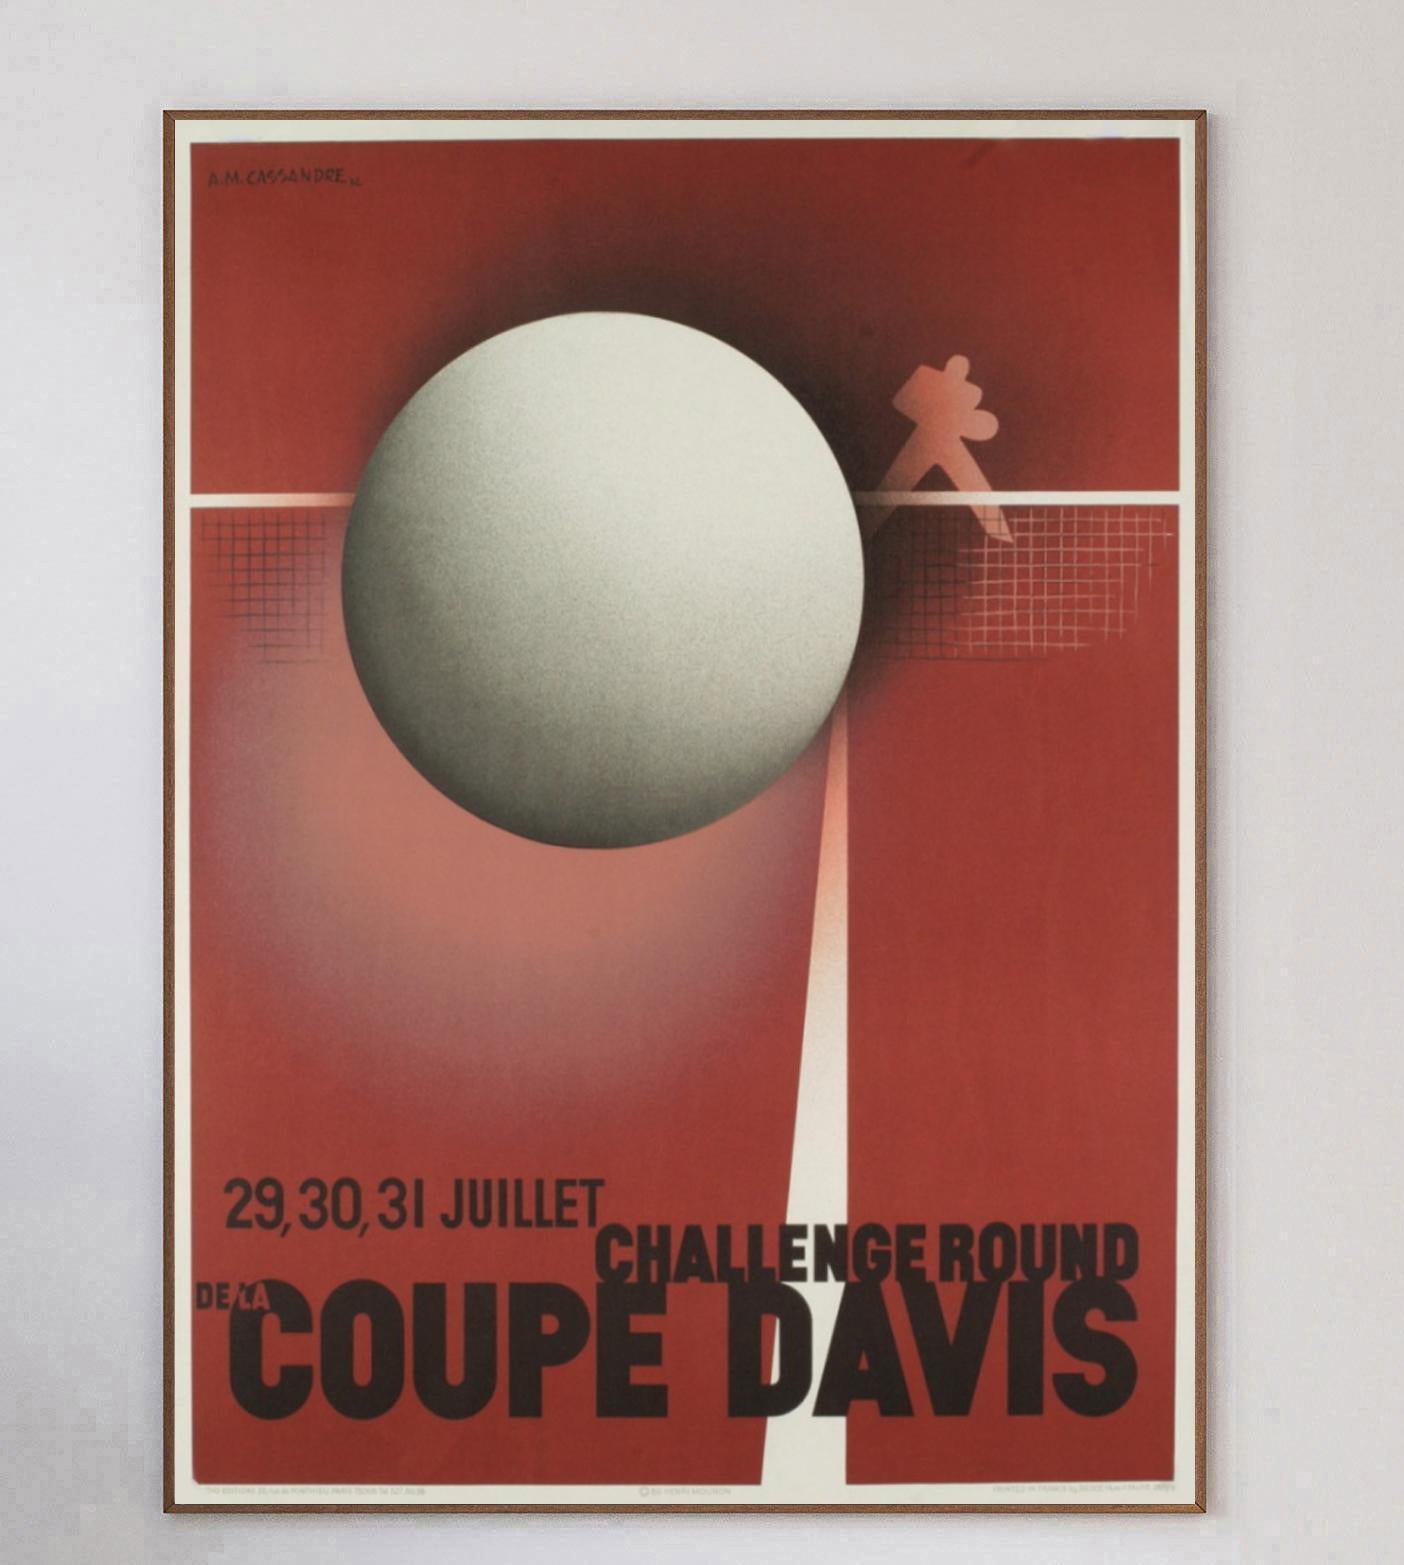 Der große französisch-ukrainische Designer A.M. gilt als einer der größten Grafikdesigner aller Zeiten. Cassandre entwarf dieses Plakat für den Coupe Davis oder Davis Cup im Jahr 1932. Dieses wunderschöne Plakat im typischen Art-déco-Stil, das durch